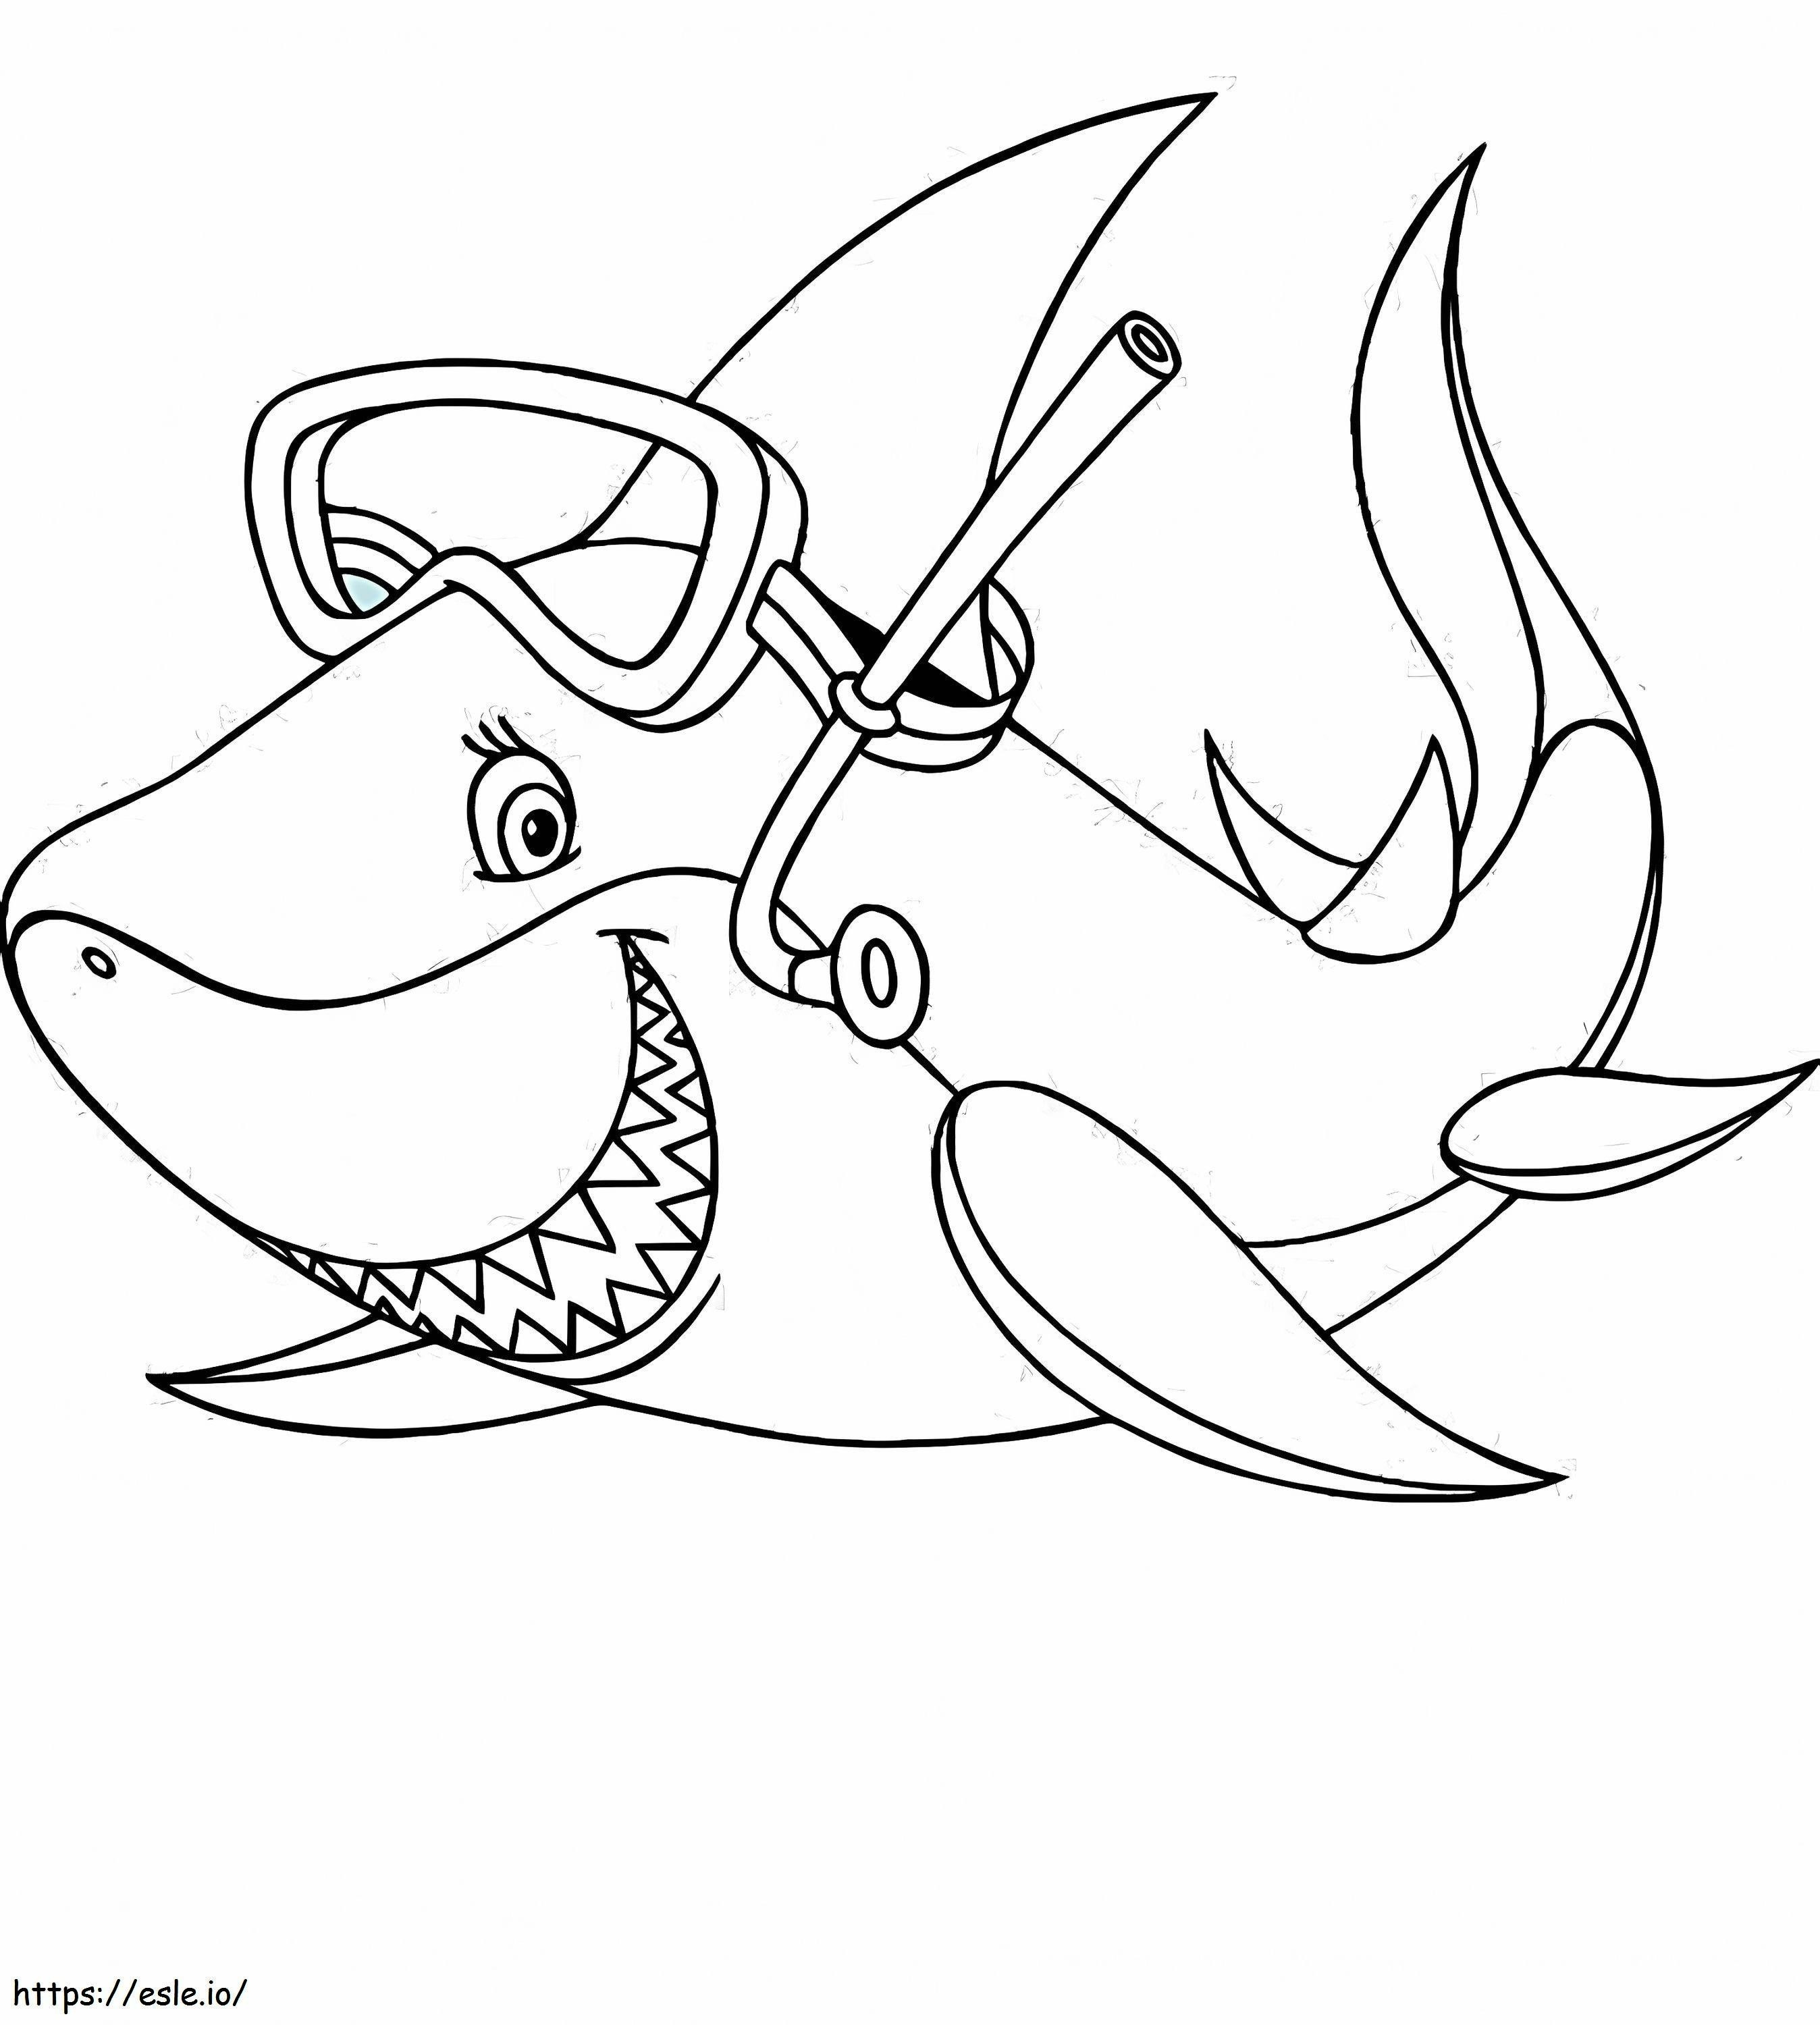 1541748815_Página para colorear de un tiburón Nuevo tiburón de un tiburón para colorear